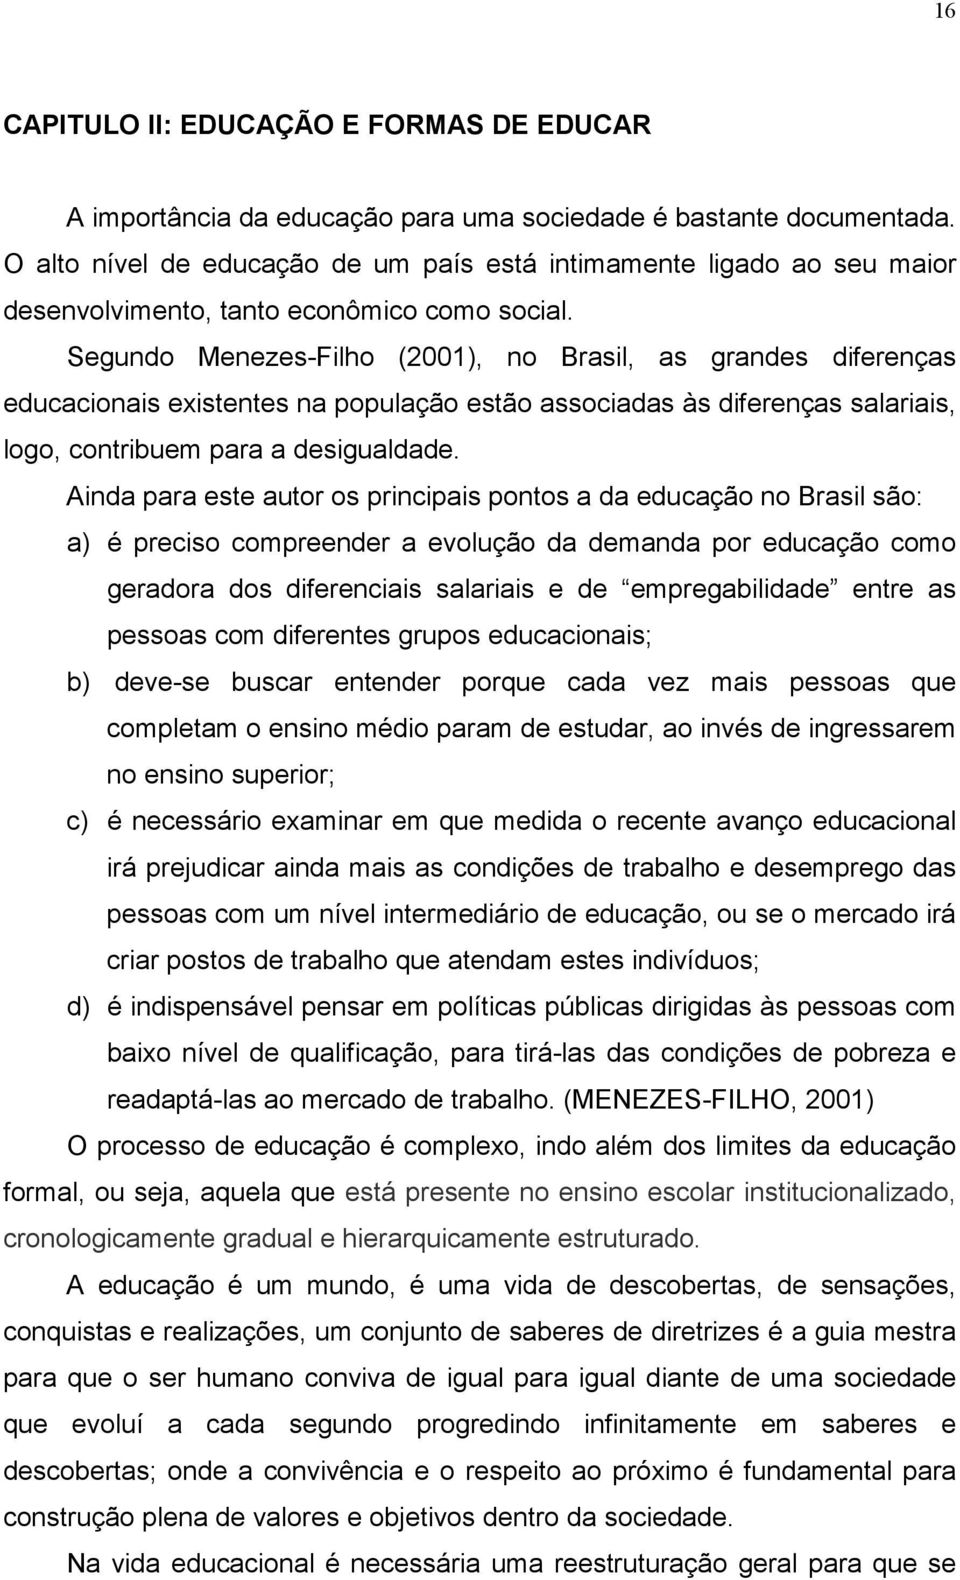 Segundo Menezes-Filho (2001), no Brasil, as grandes diferenças educacionais existentes na população estão associadas às diferenças salariais, logo, contribuem para a desigualdade.